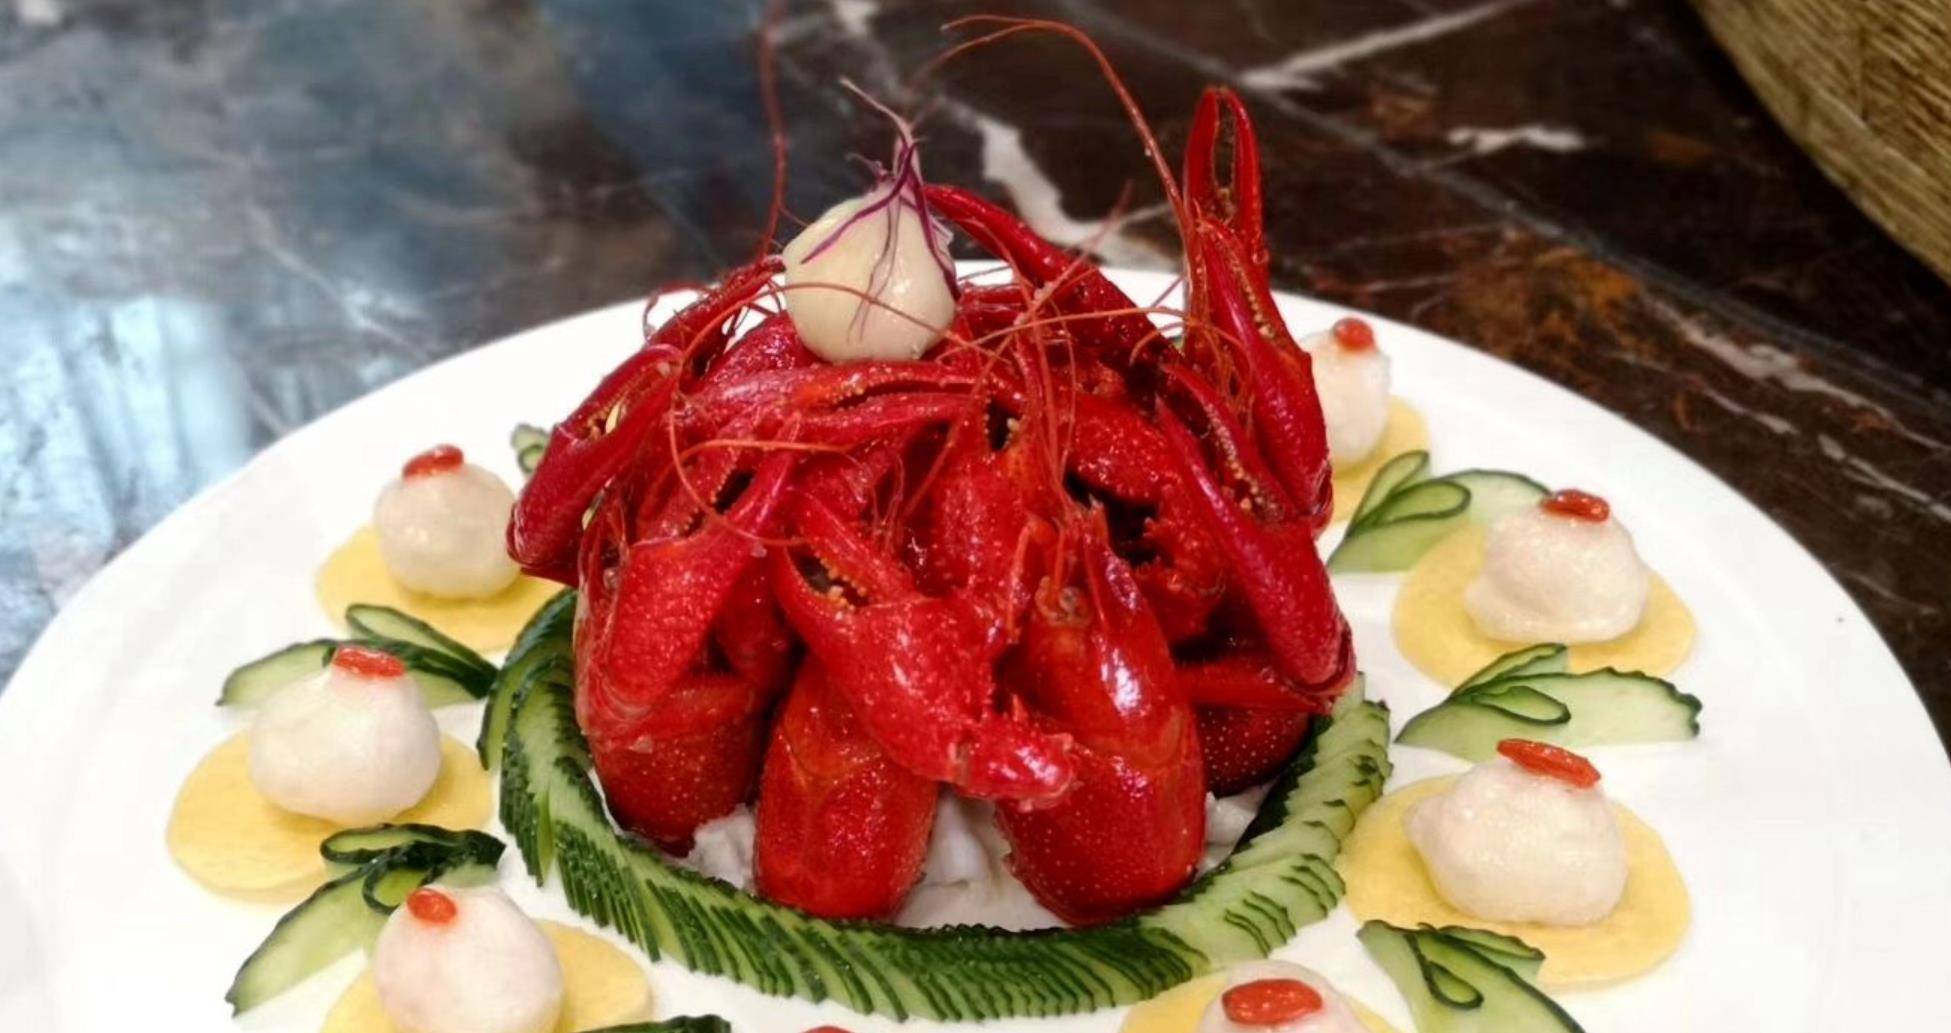 风头盖过盱眙龙虾的潜江龙虾，用118道菜品刷新吉尼斯世界纪录